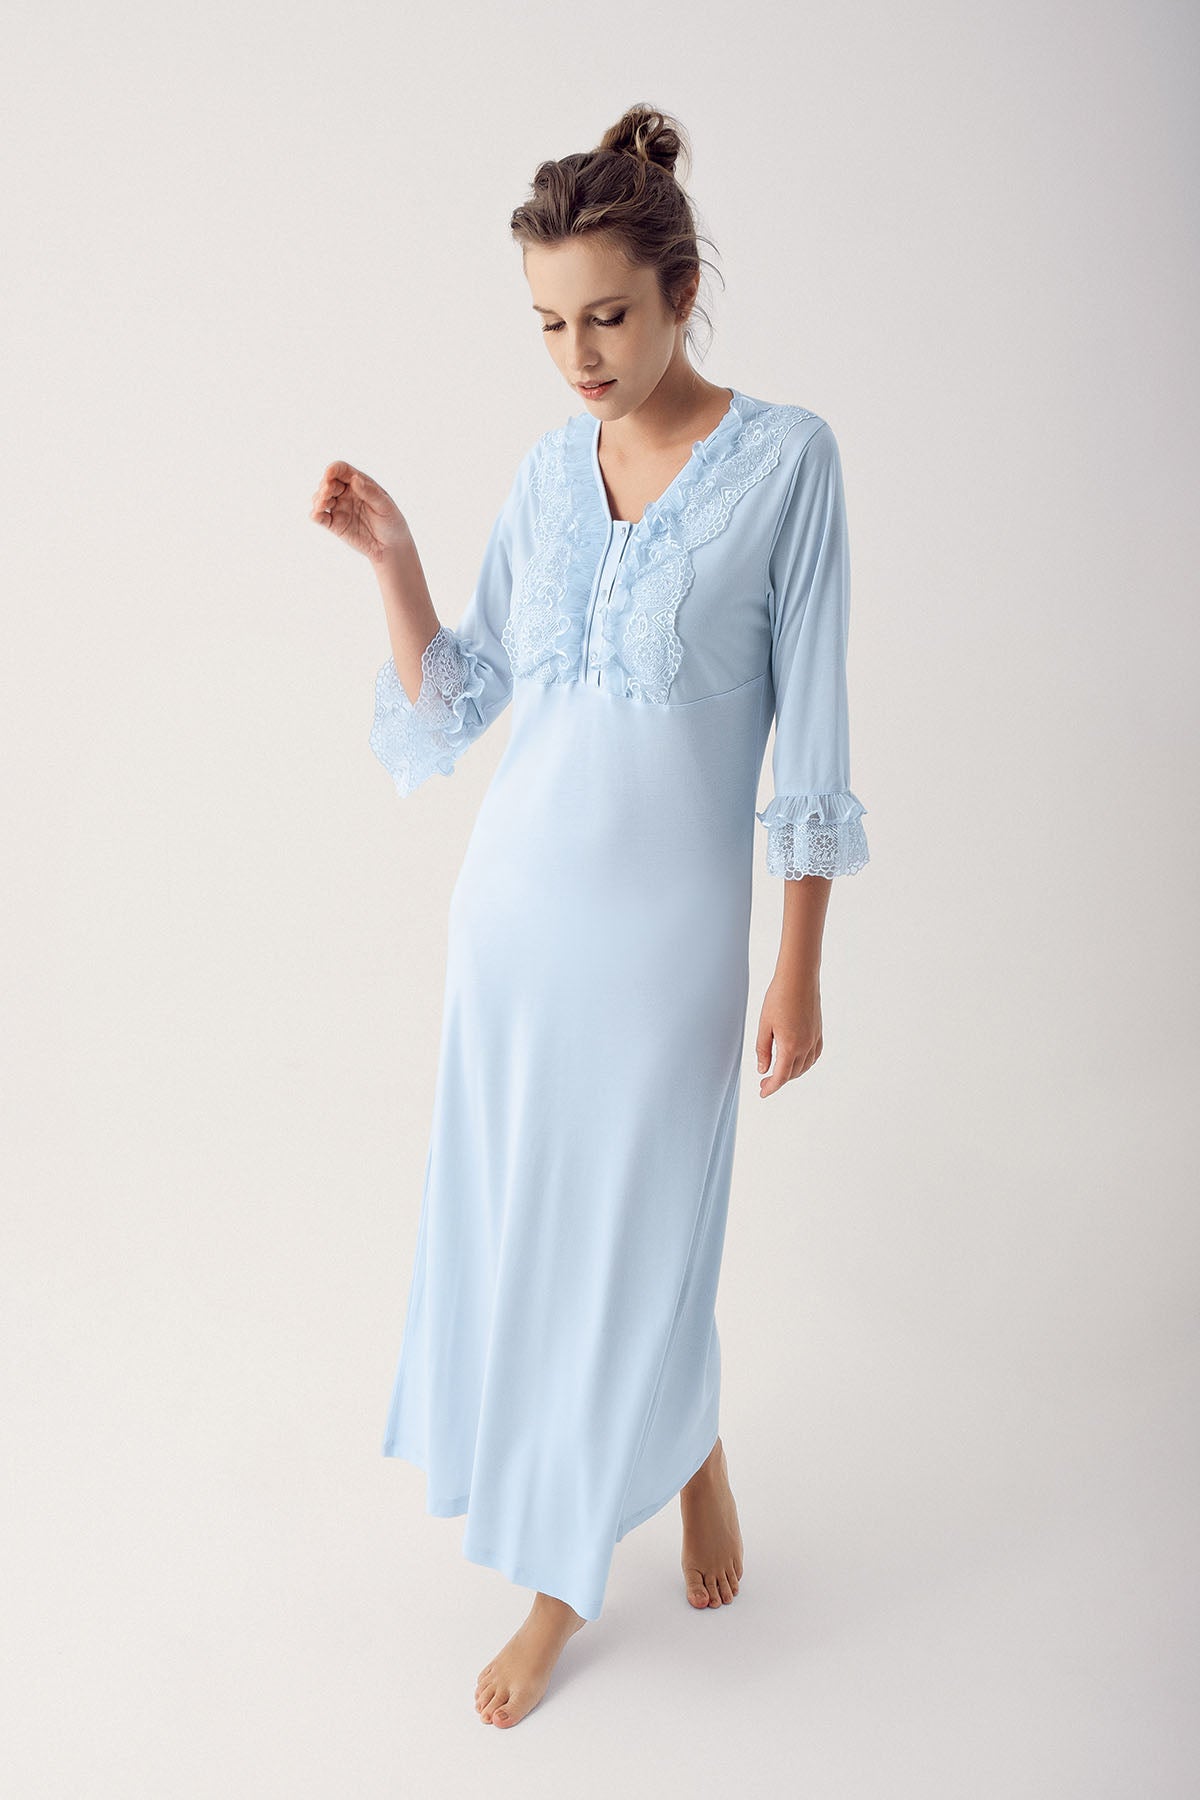 Shopymommy 14103 Leaf Lace Maternity & Nursing Nightgown Blue